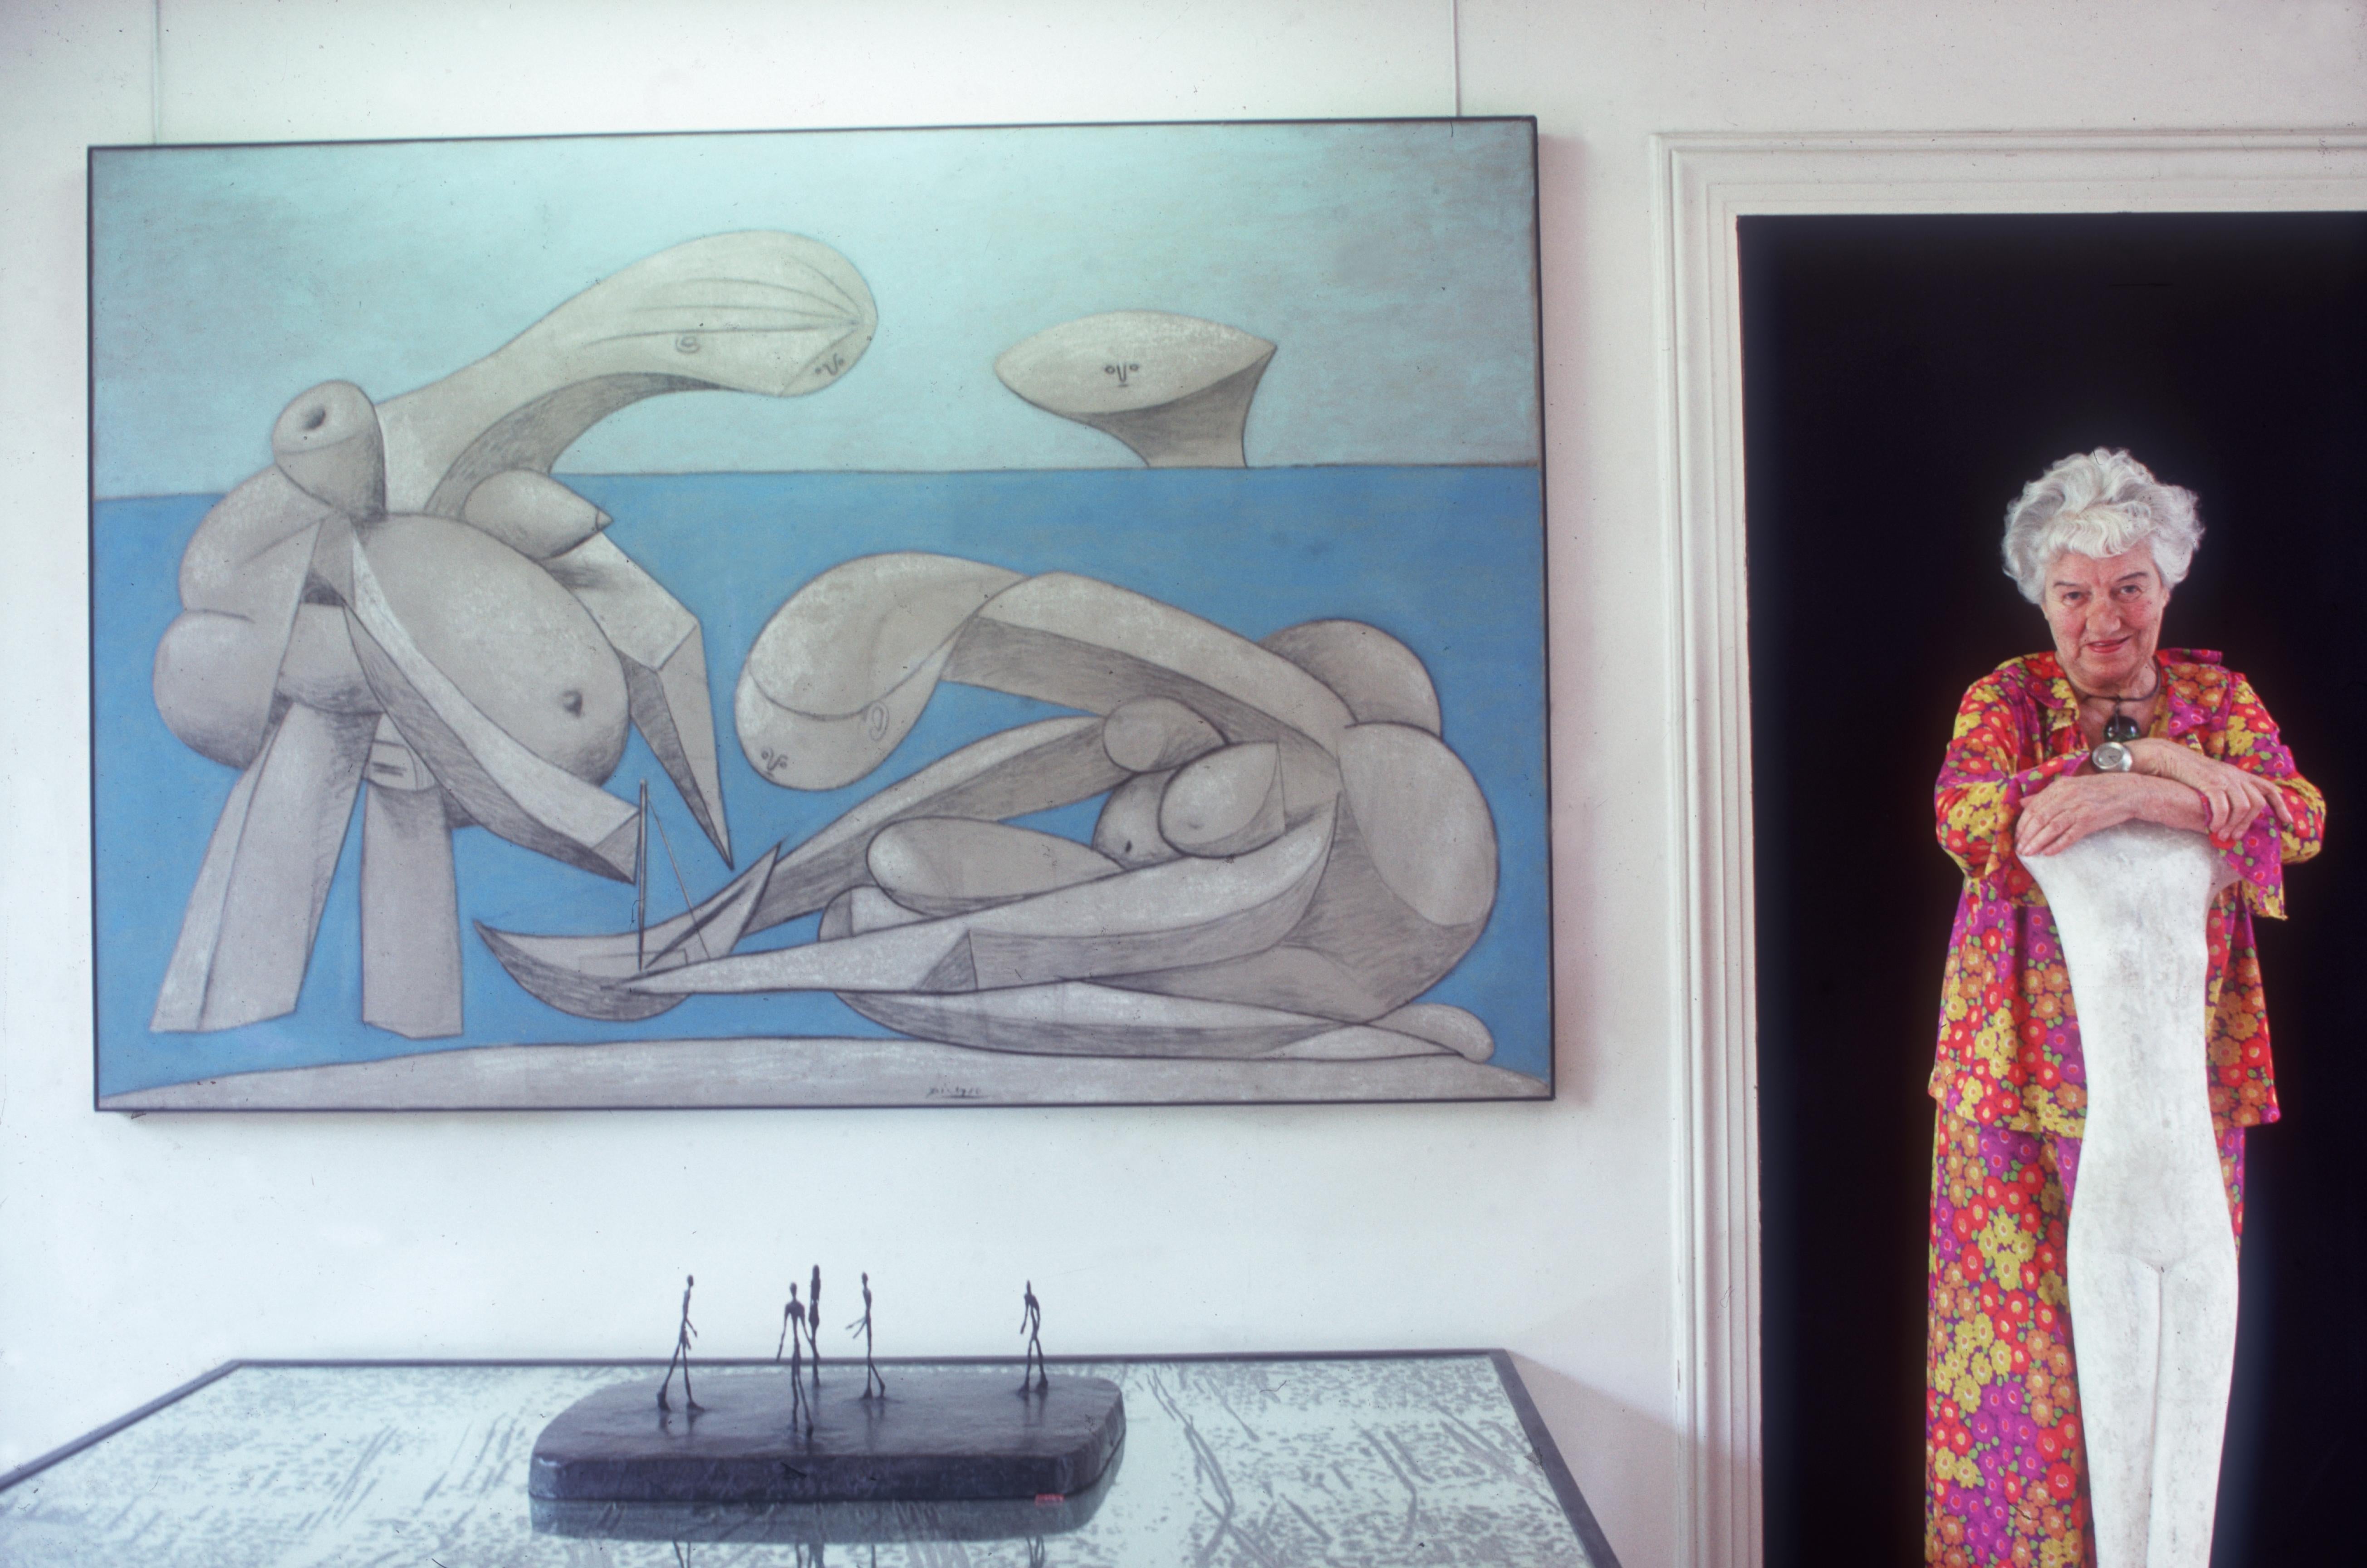 Septembre 1978 : Peggy Guggenheim (1898 - 1979) au Palazzo Venier Dei Leoni, à Venise. Le palais abrite sa collection d'art privée, dont le tableau "Sur la plage" de Picasso, que l'on voit à gauche. 

Édition de 150 exemplaires numérotés à la main